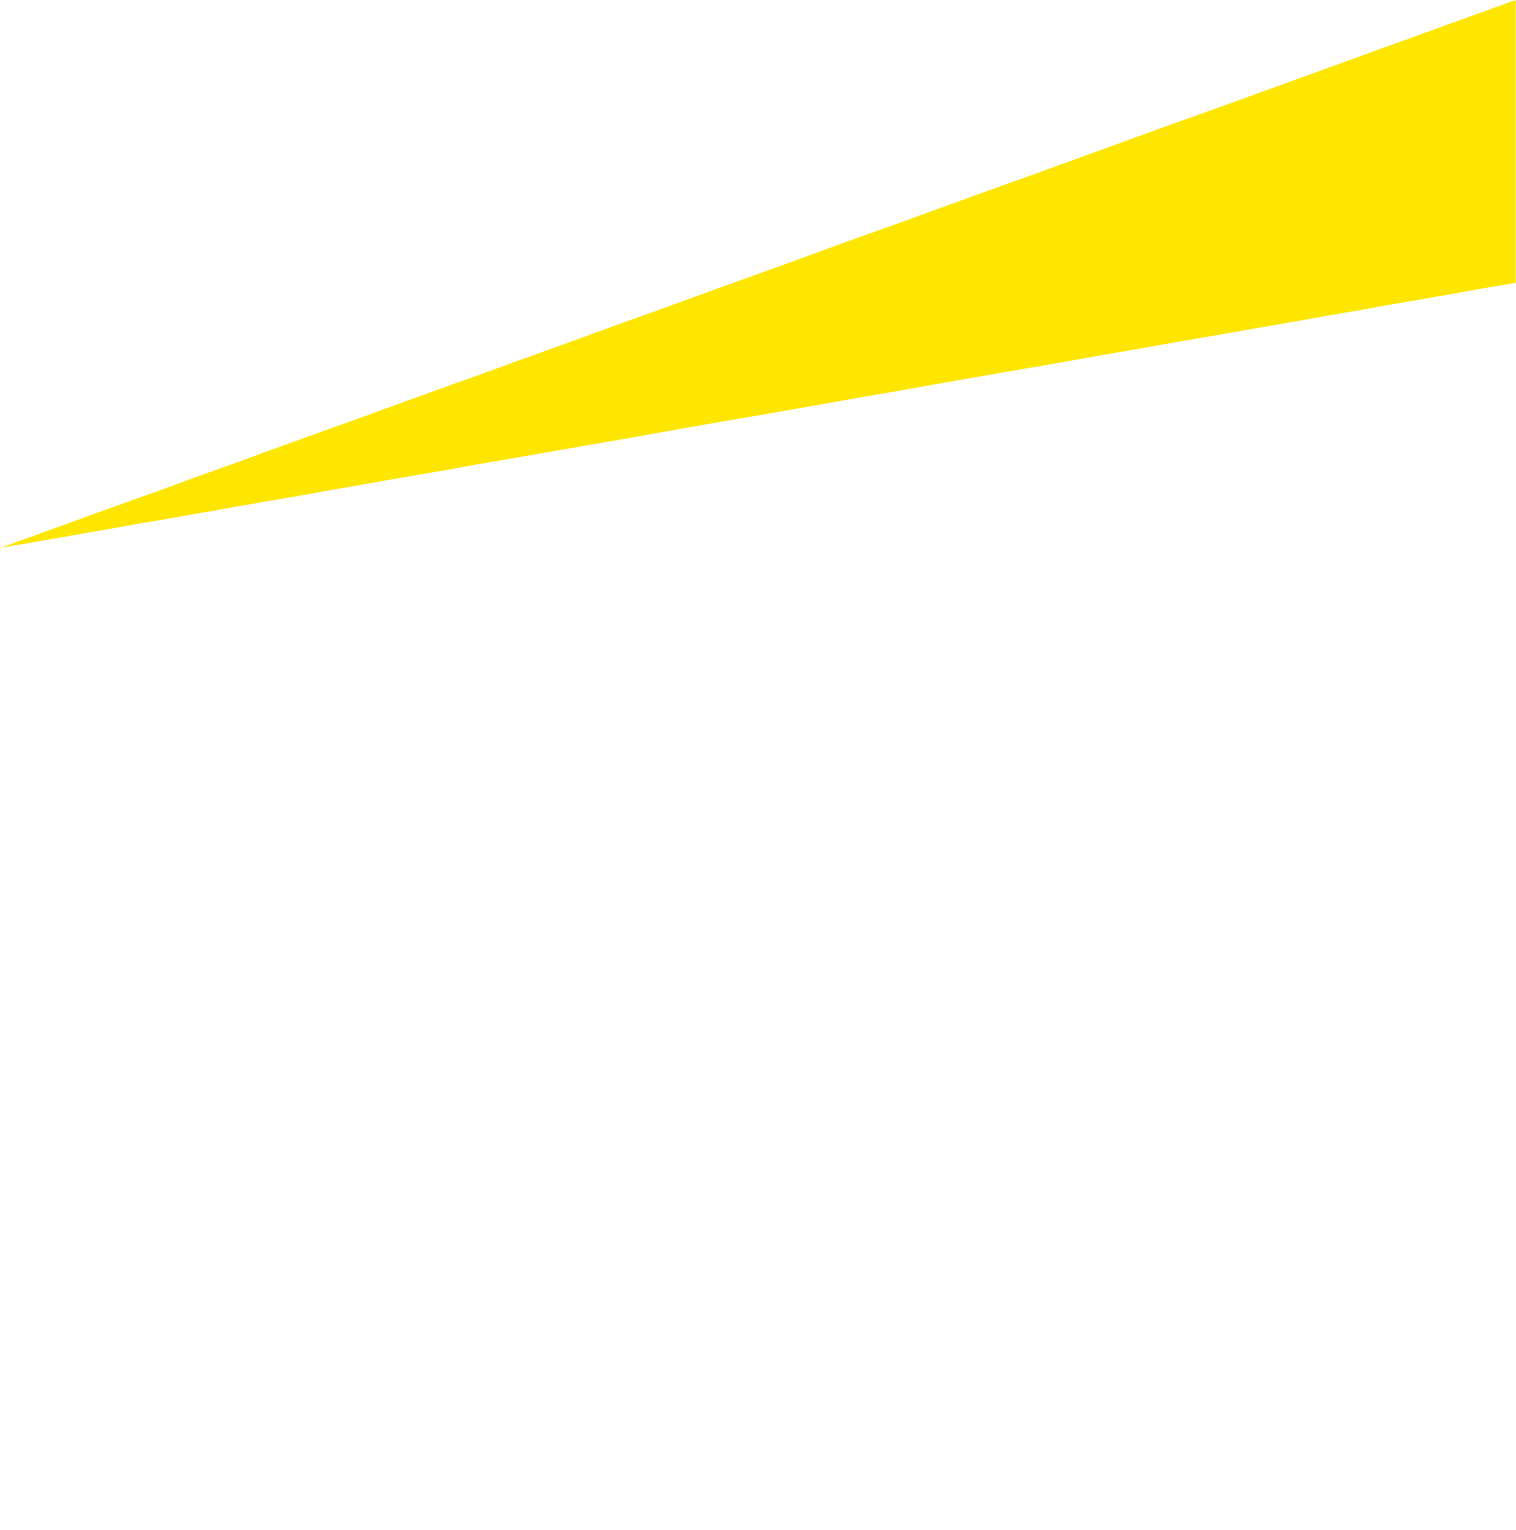 Ernst & Young logo for dark backgrounds (transparent PNG)